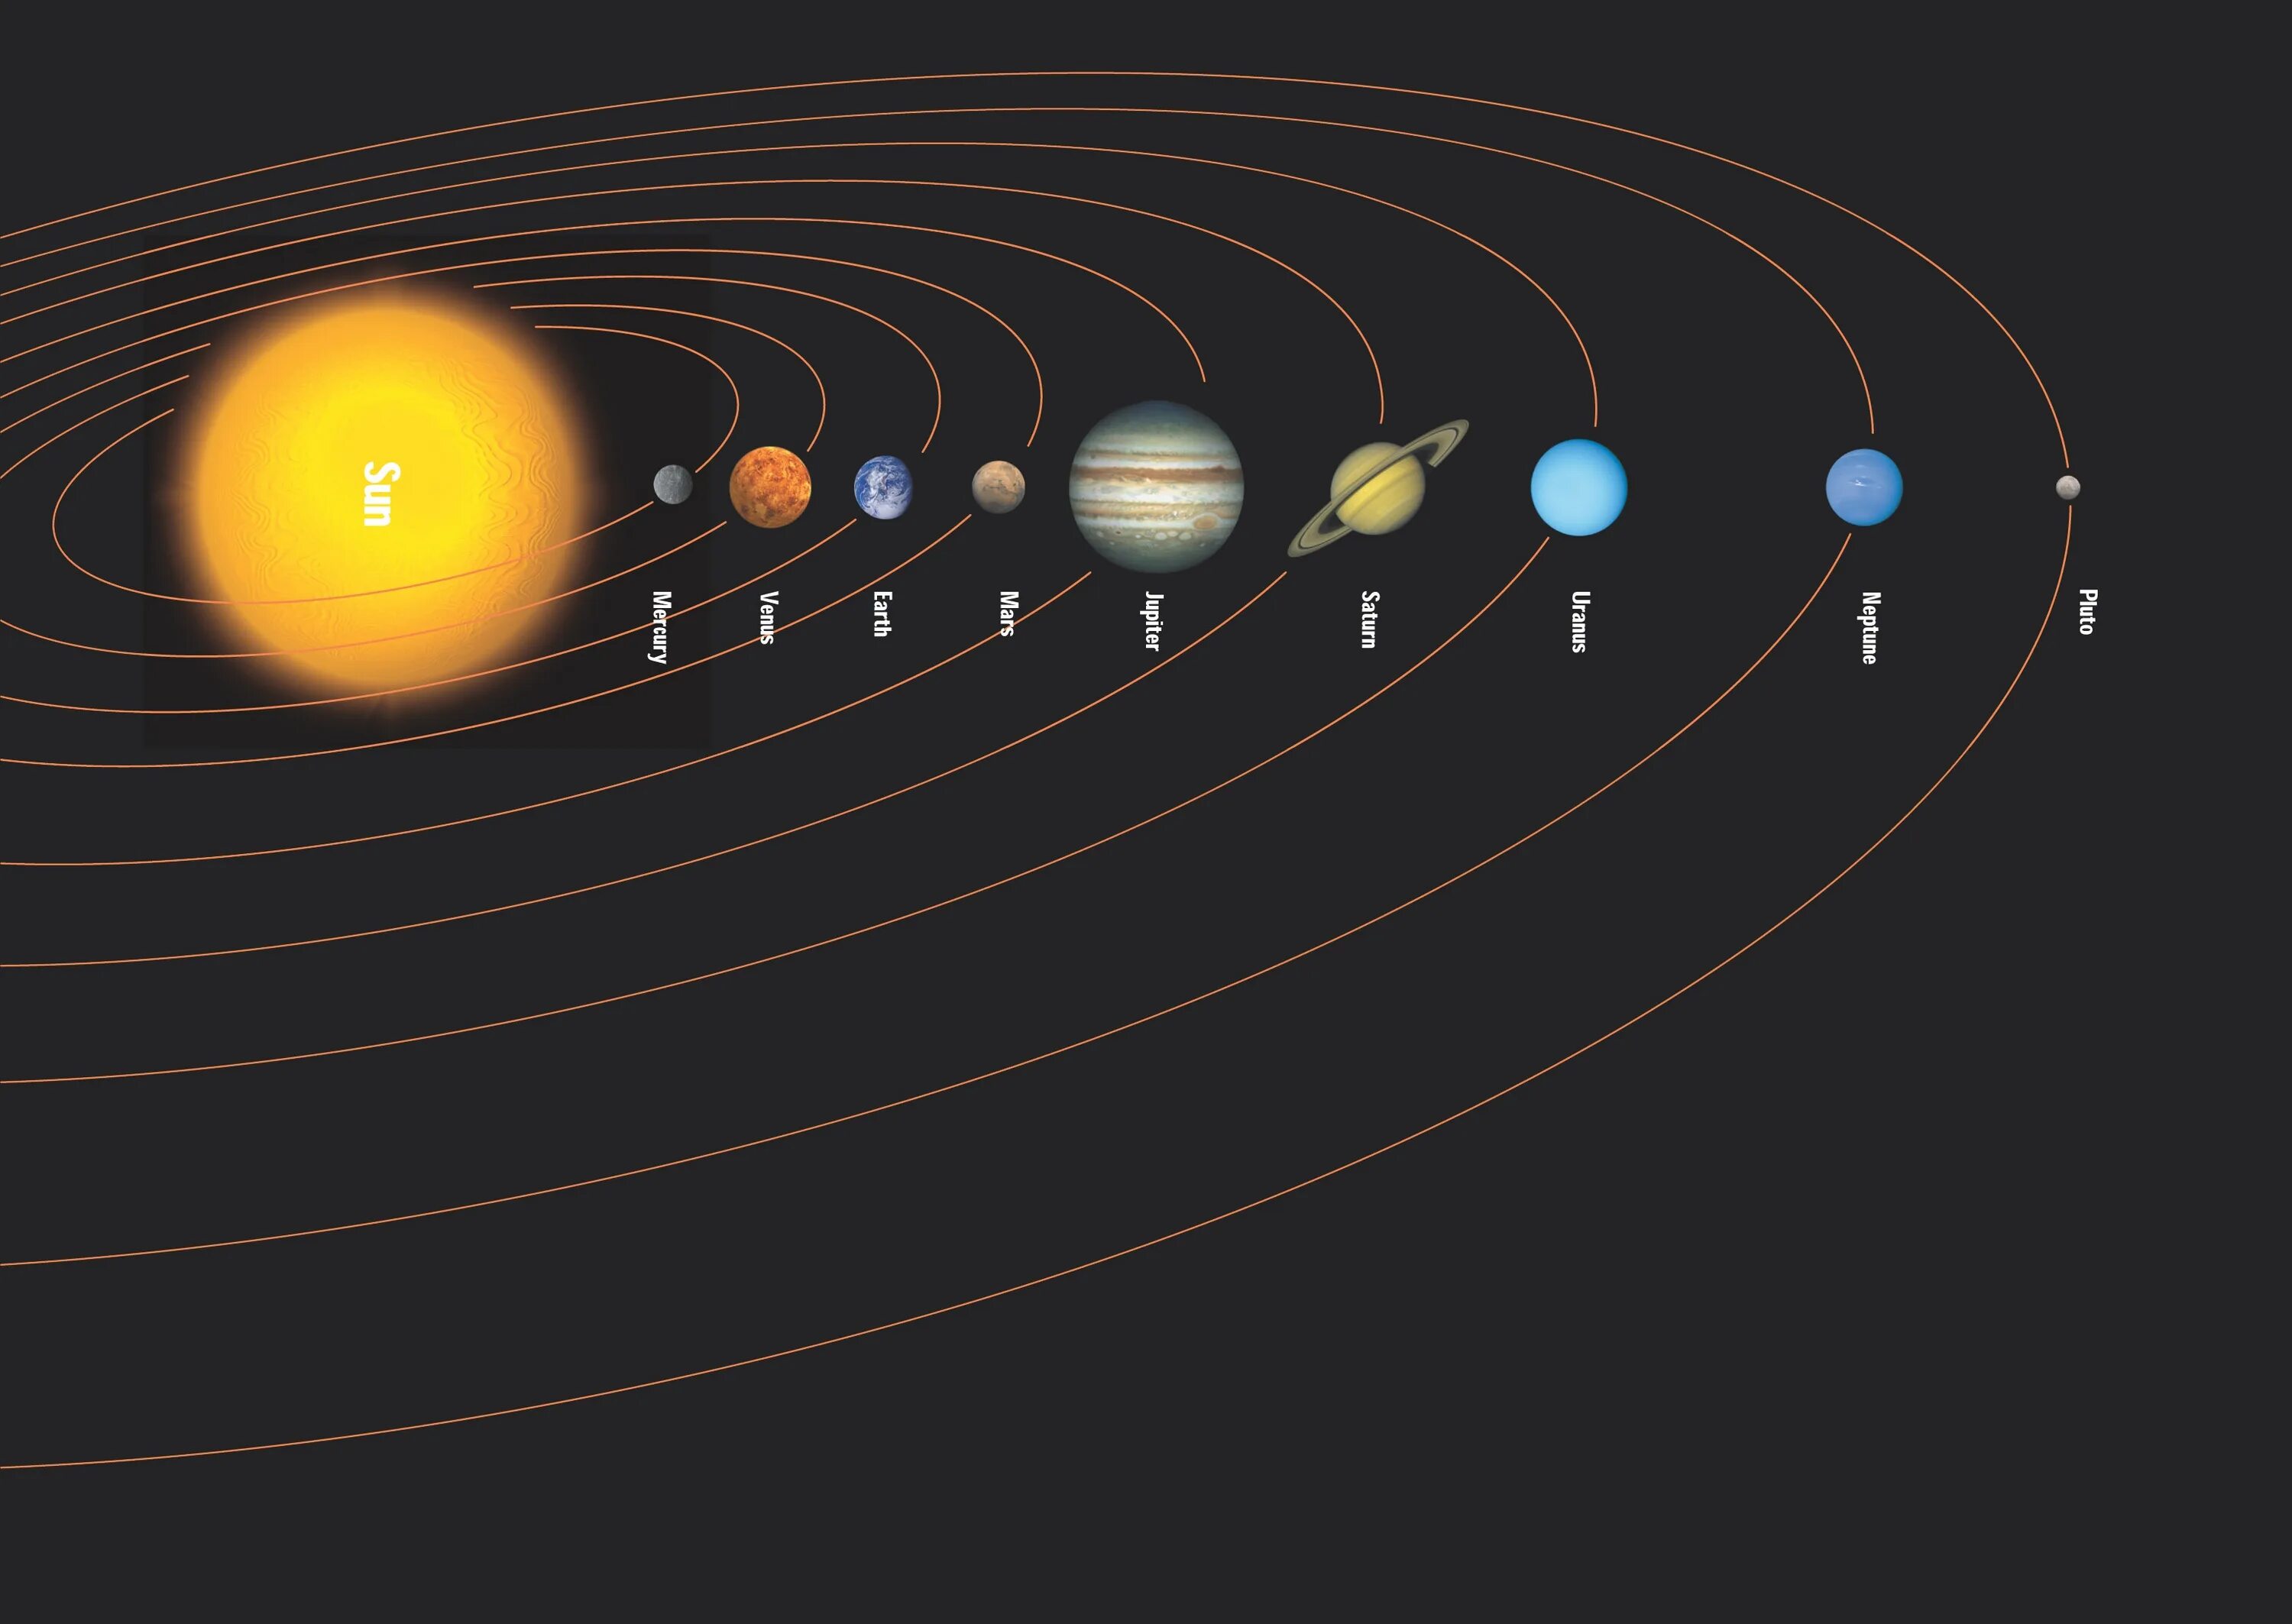 Solar system map. Расположение планет солнечной системы. Орбиты планет солнечной системы. Планеты по порядку от солнца. Эллиптические орбиты планет солнечной системы.